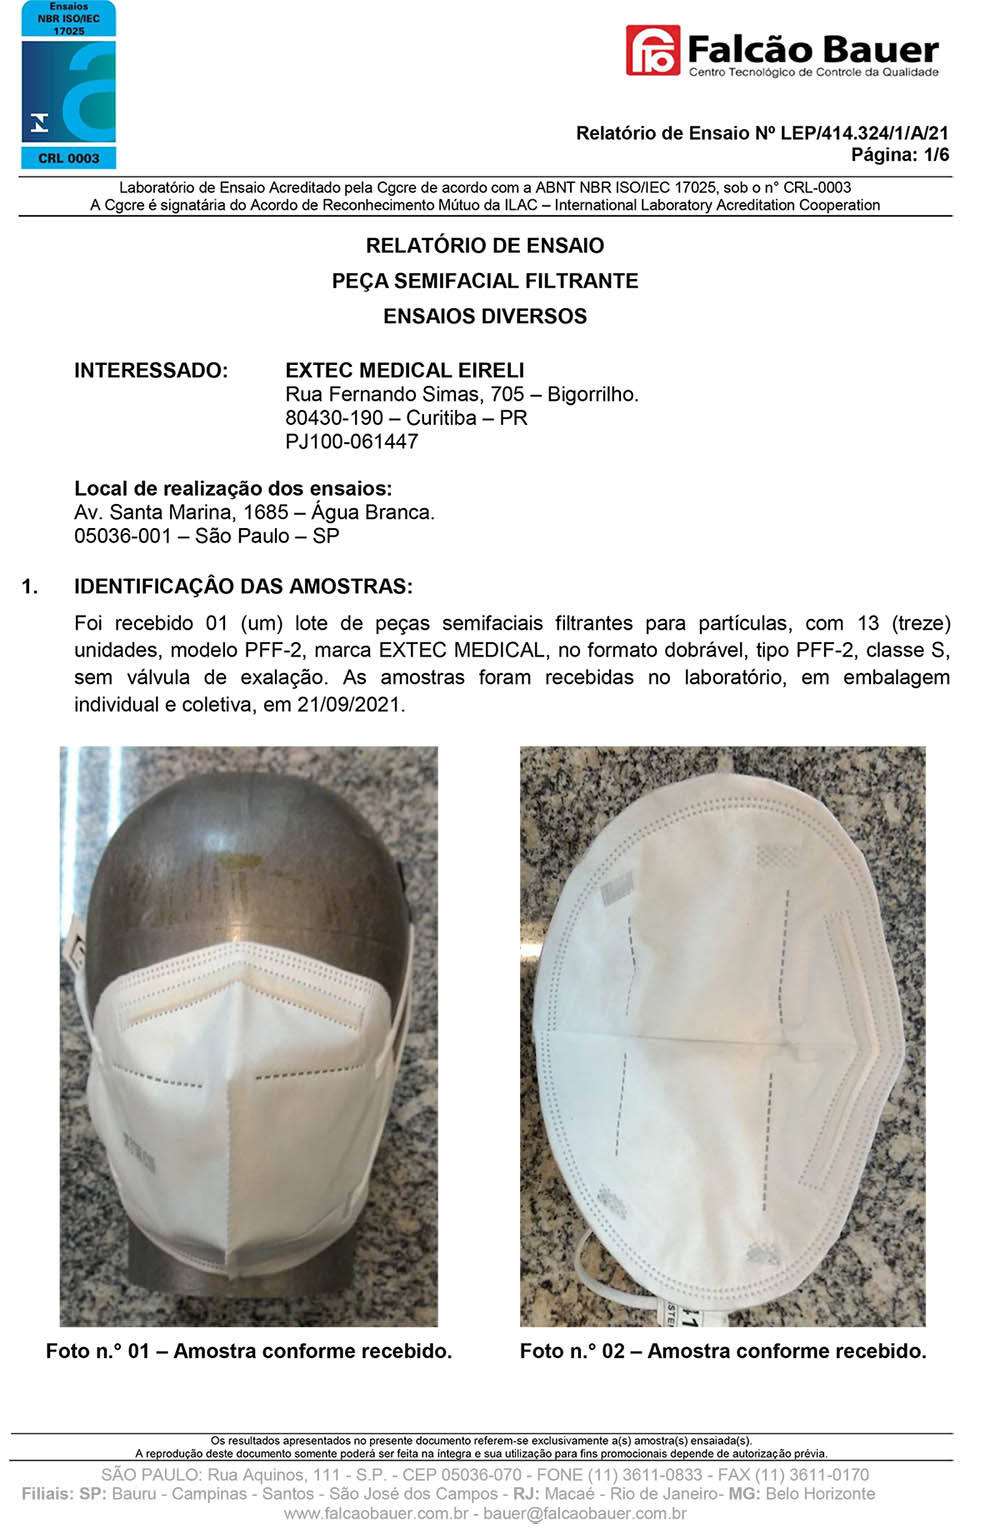 Máscara Respirador PFF2 - N95 adulto branca - pacote 50 unidades similar KN95